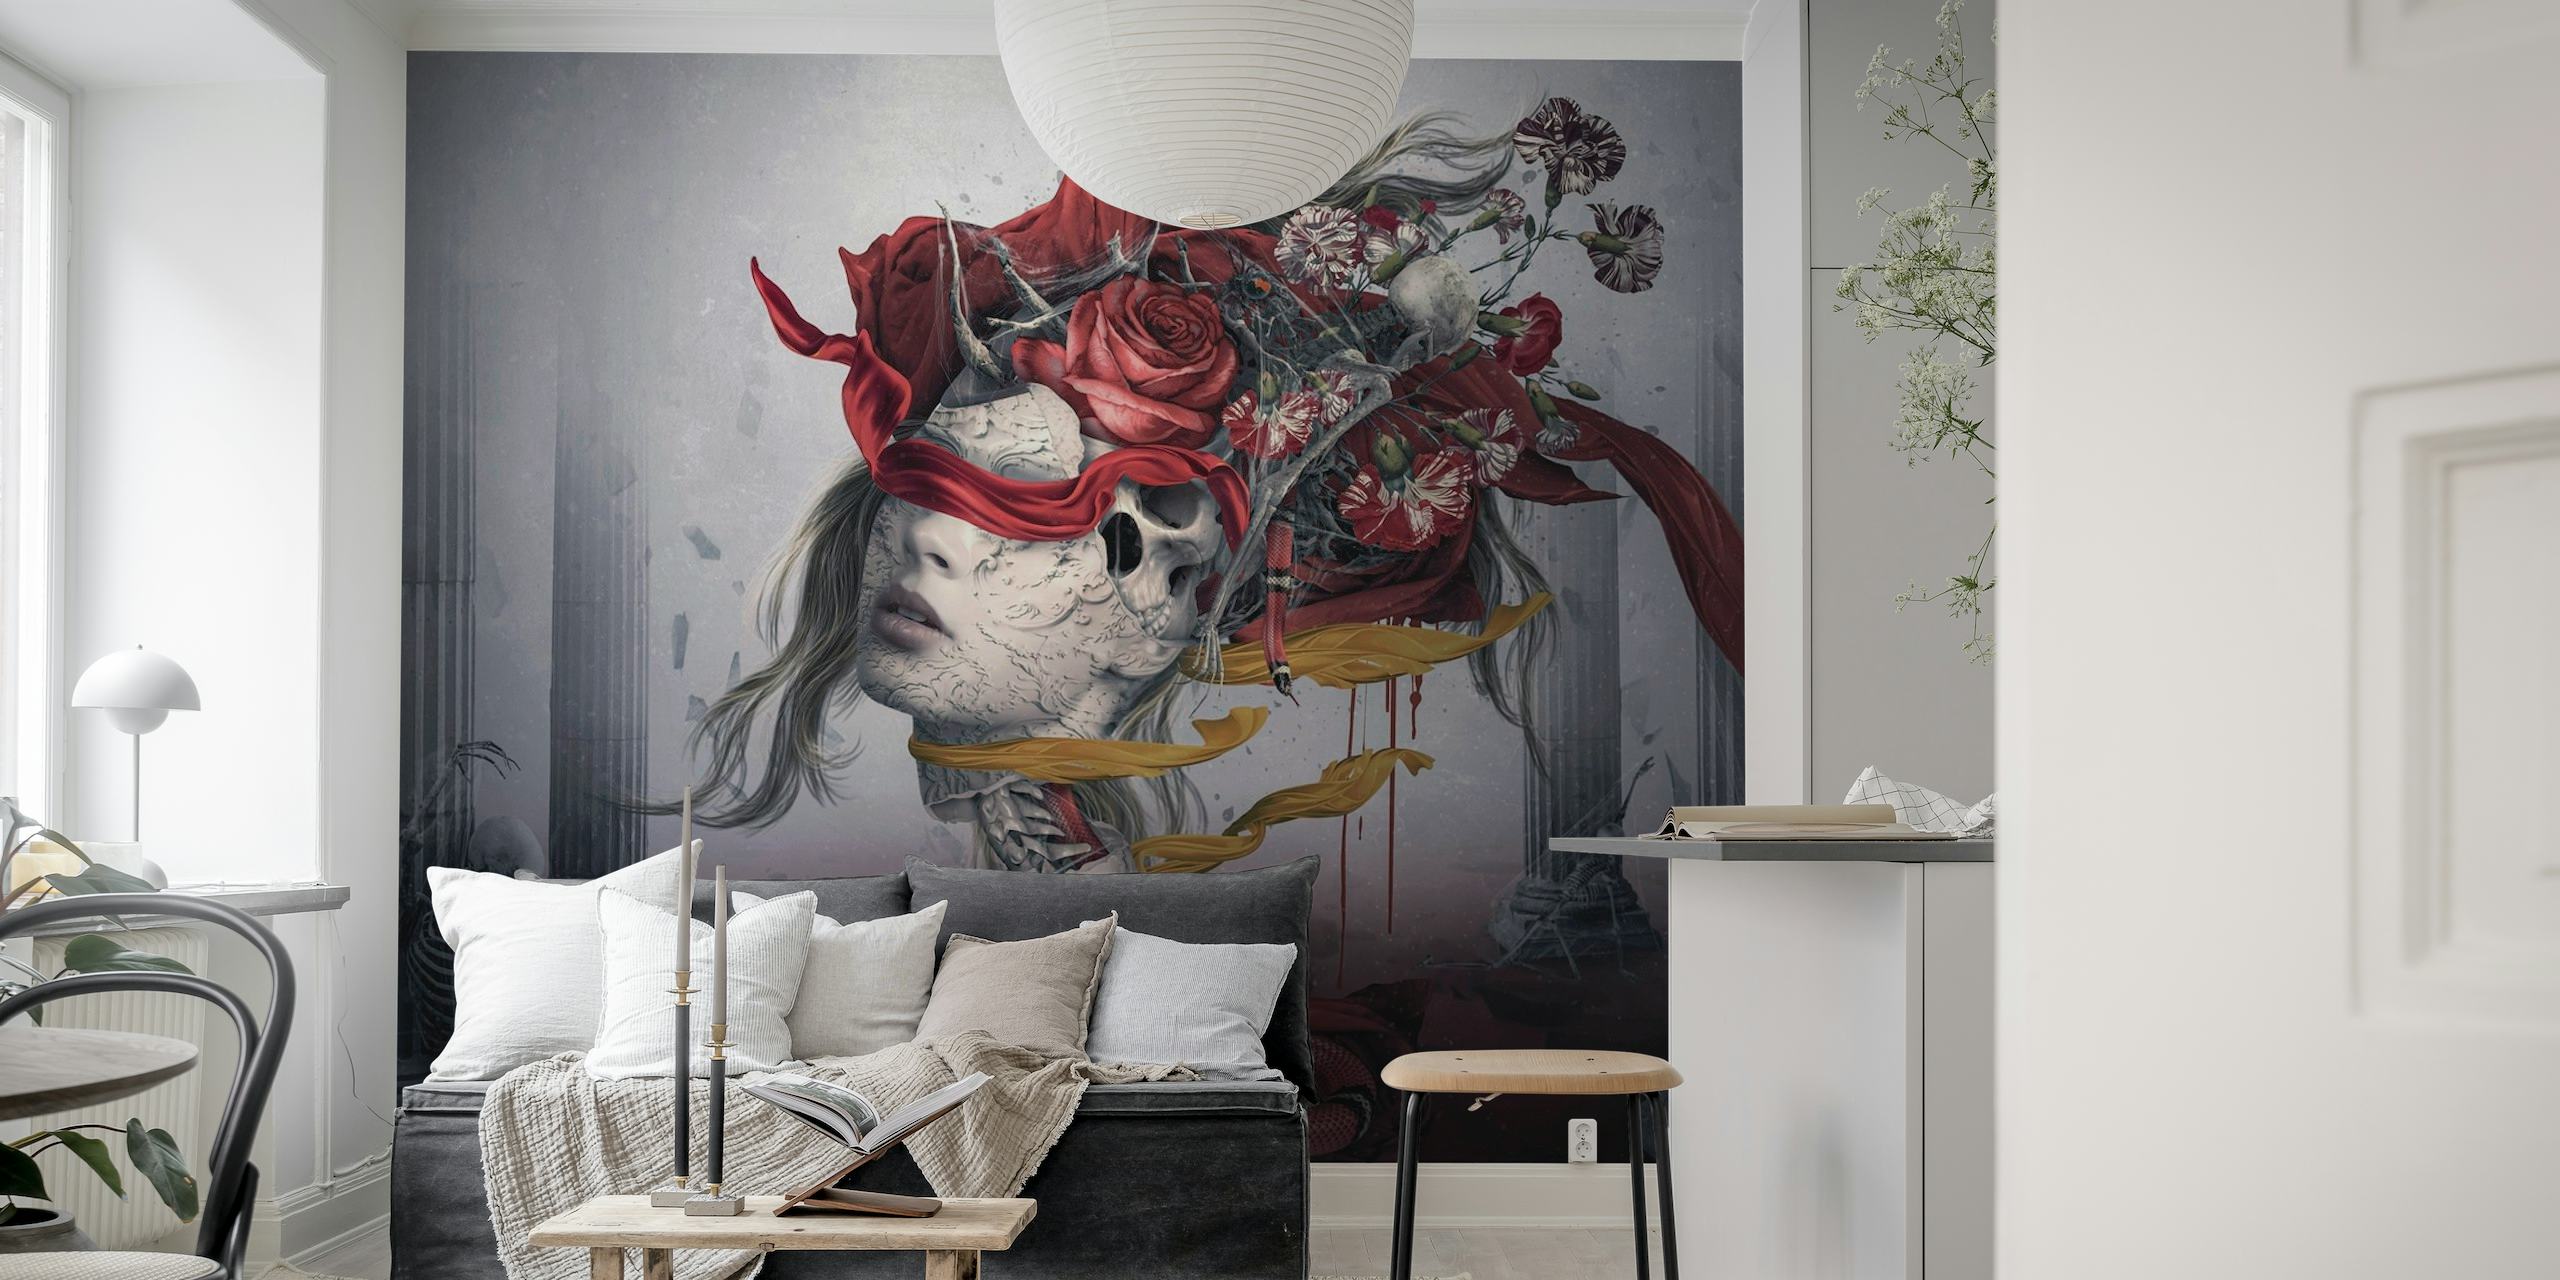 Mural surrealista que representa una figura con rosas rojas y detalles ahumados sobre un fondo apagado